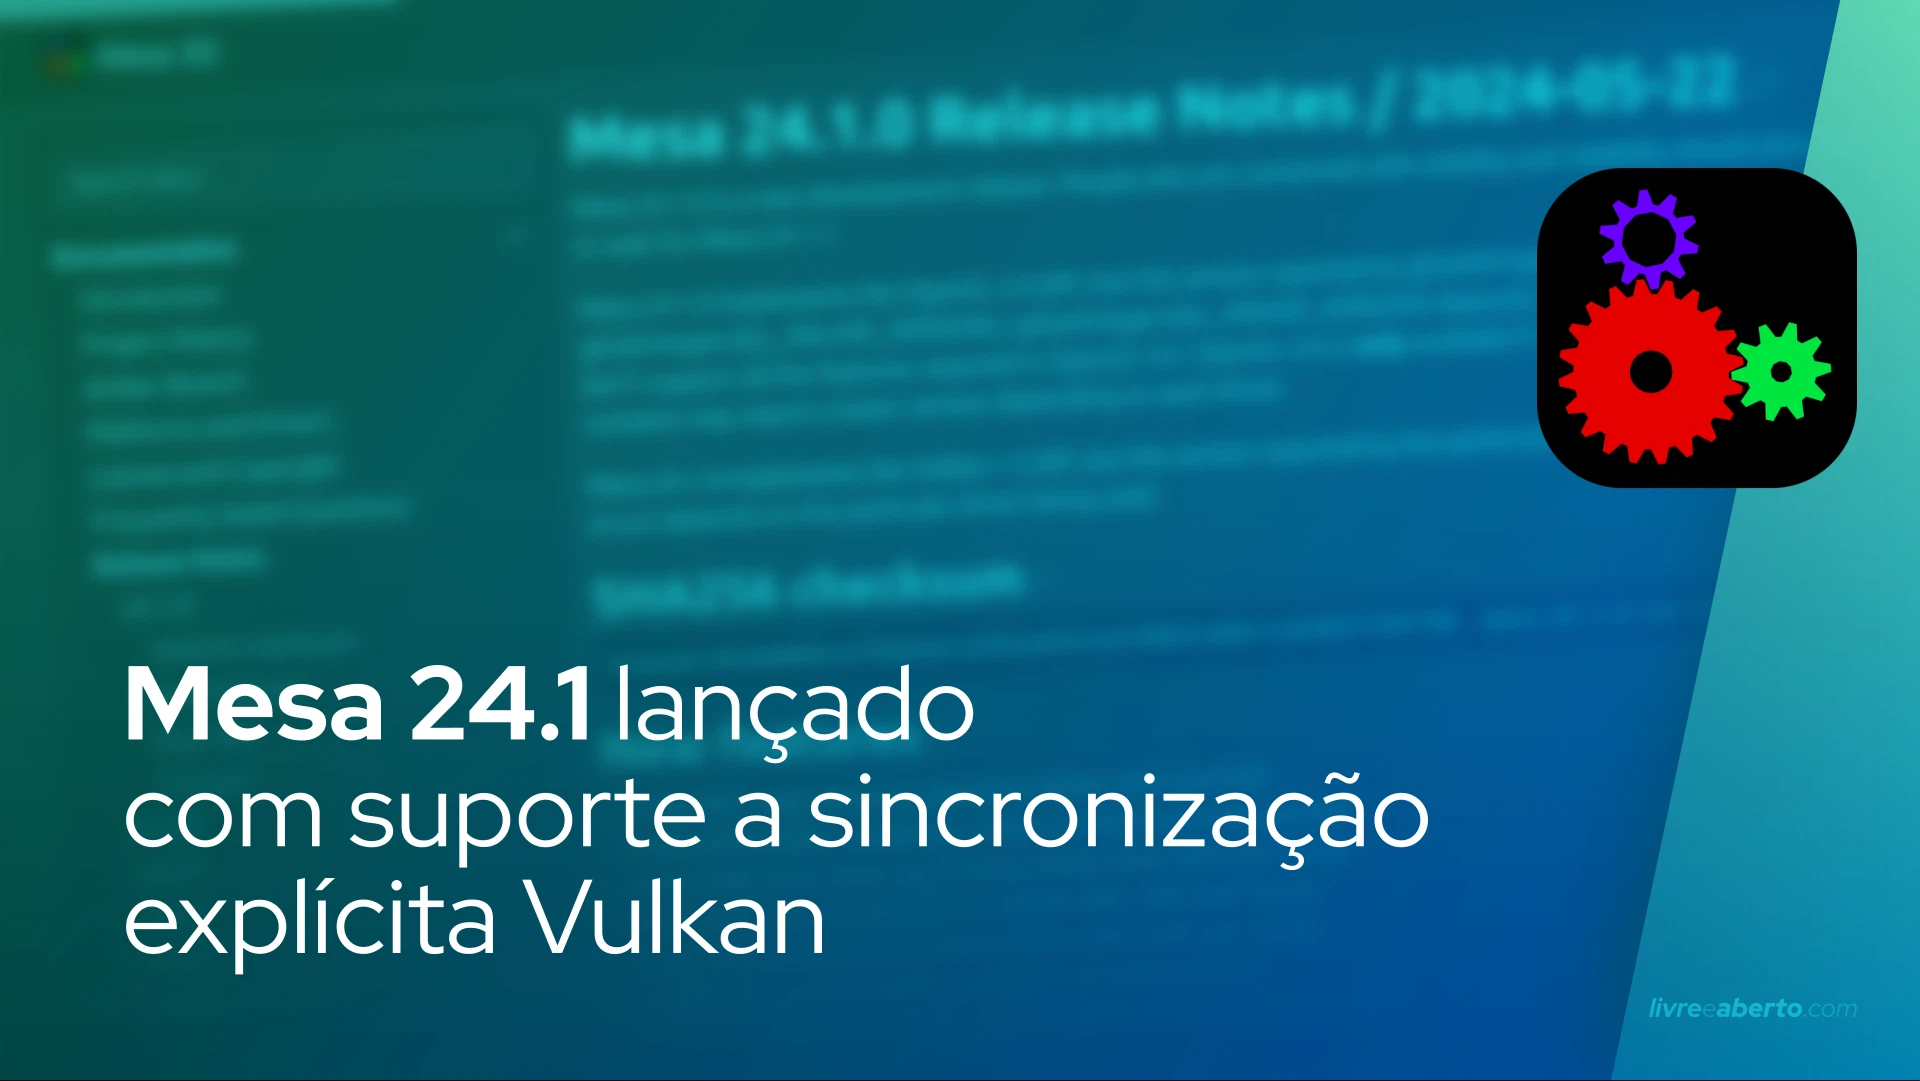 Mesa 24.1 lançado com suporte a sincronização explícita Vulkan